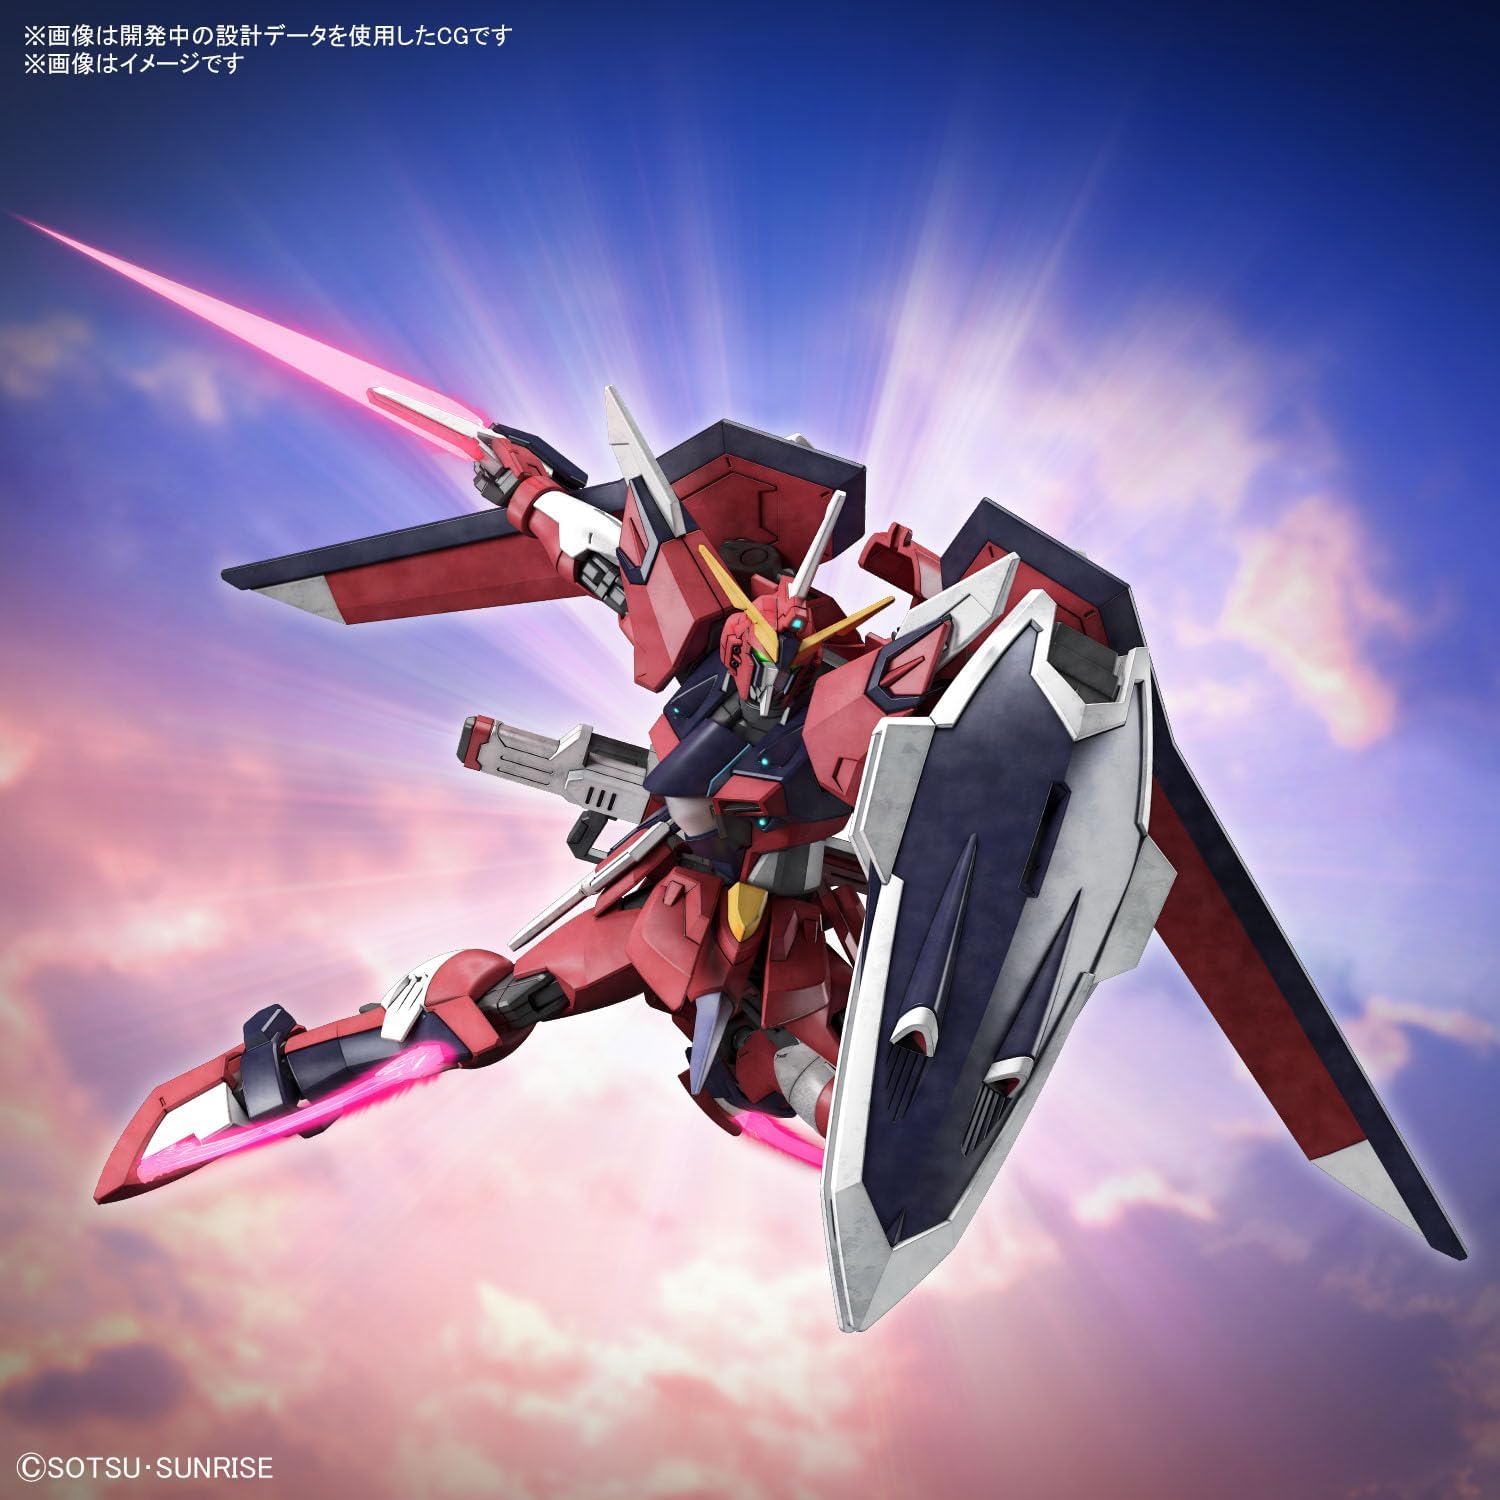 Bandai HGCE244 Immortal Justice Gundam - BanzaiHobby